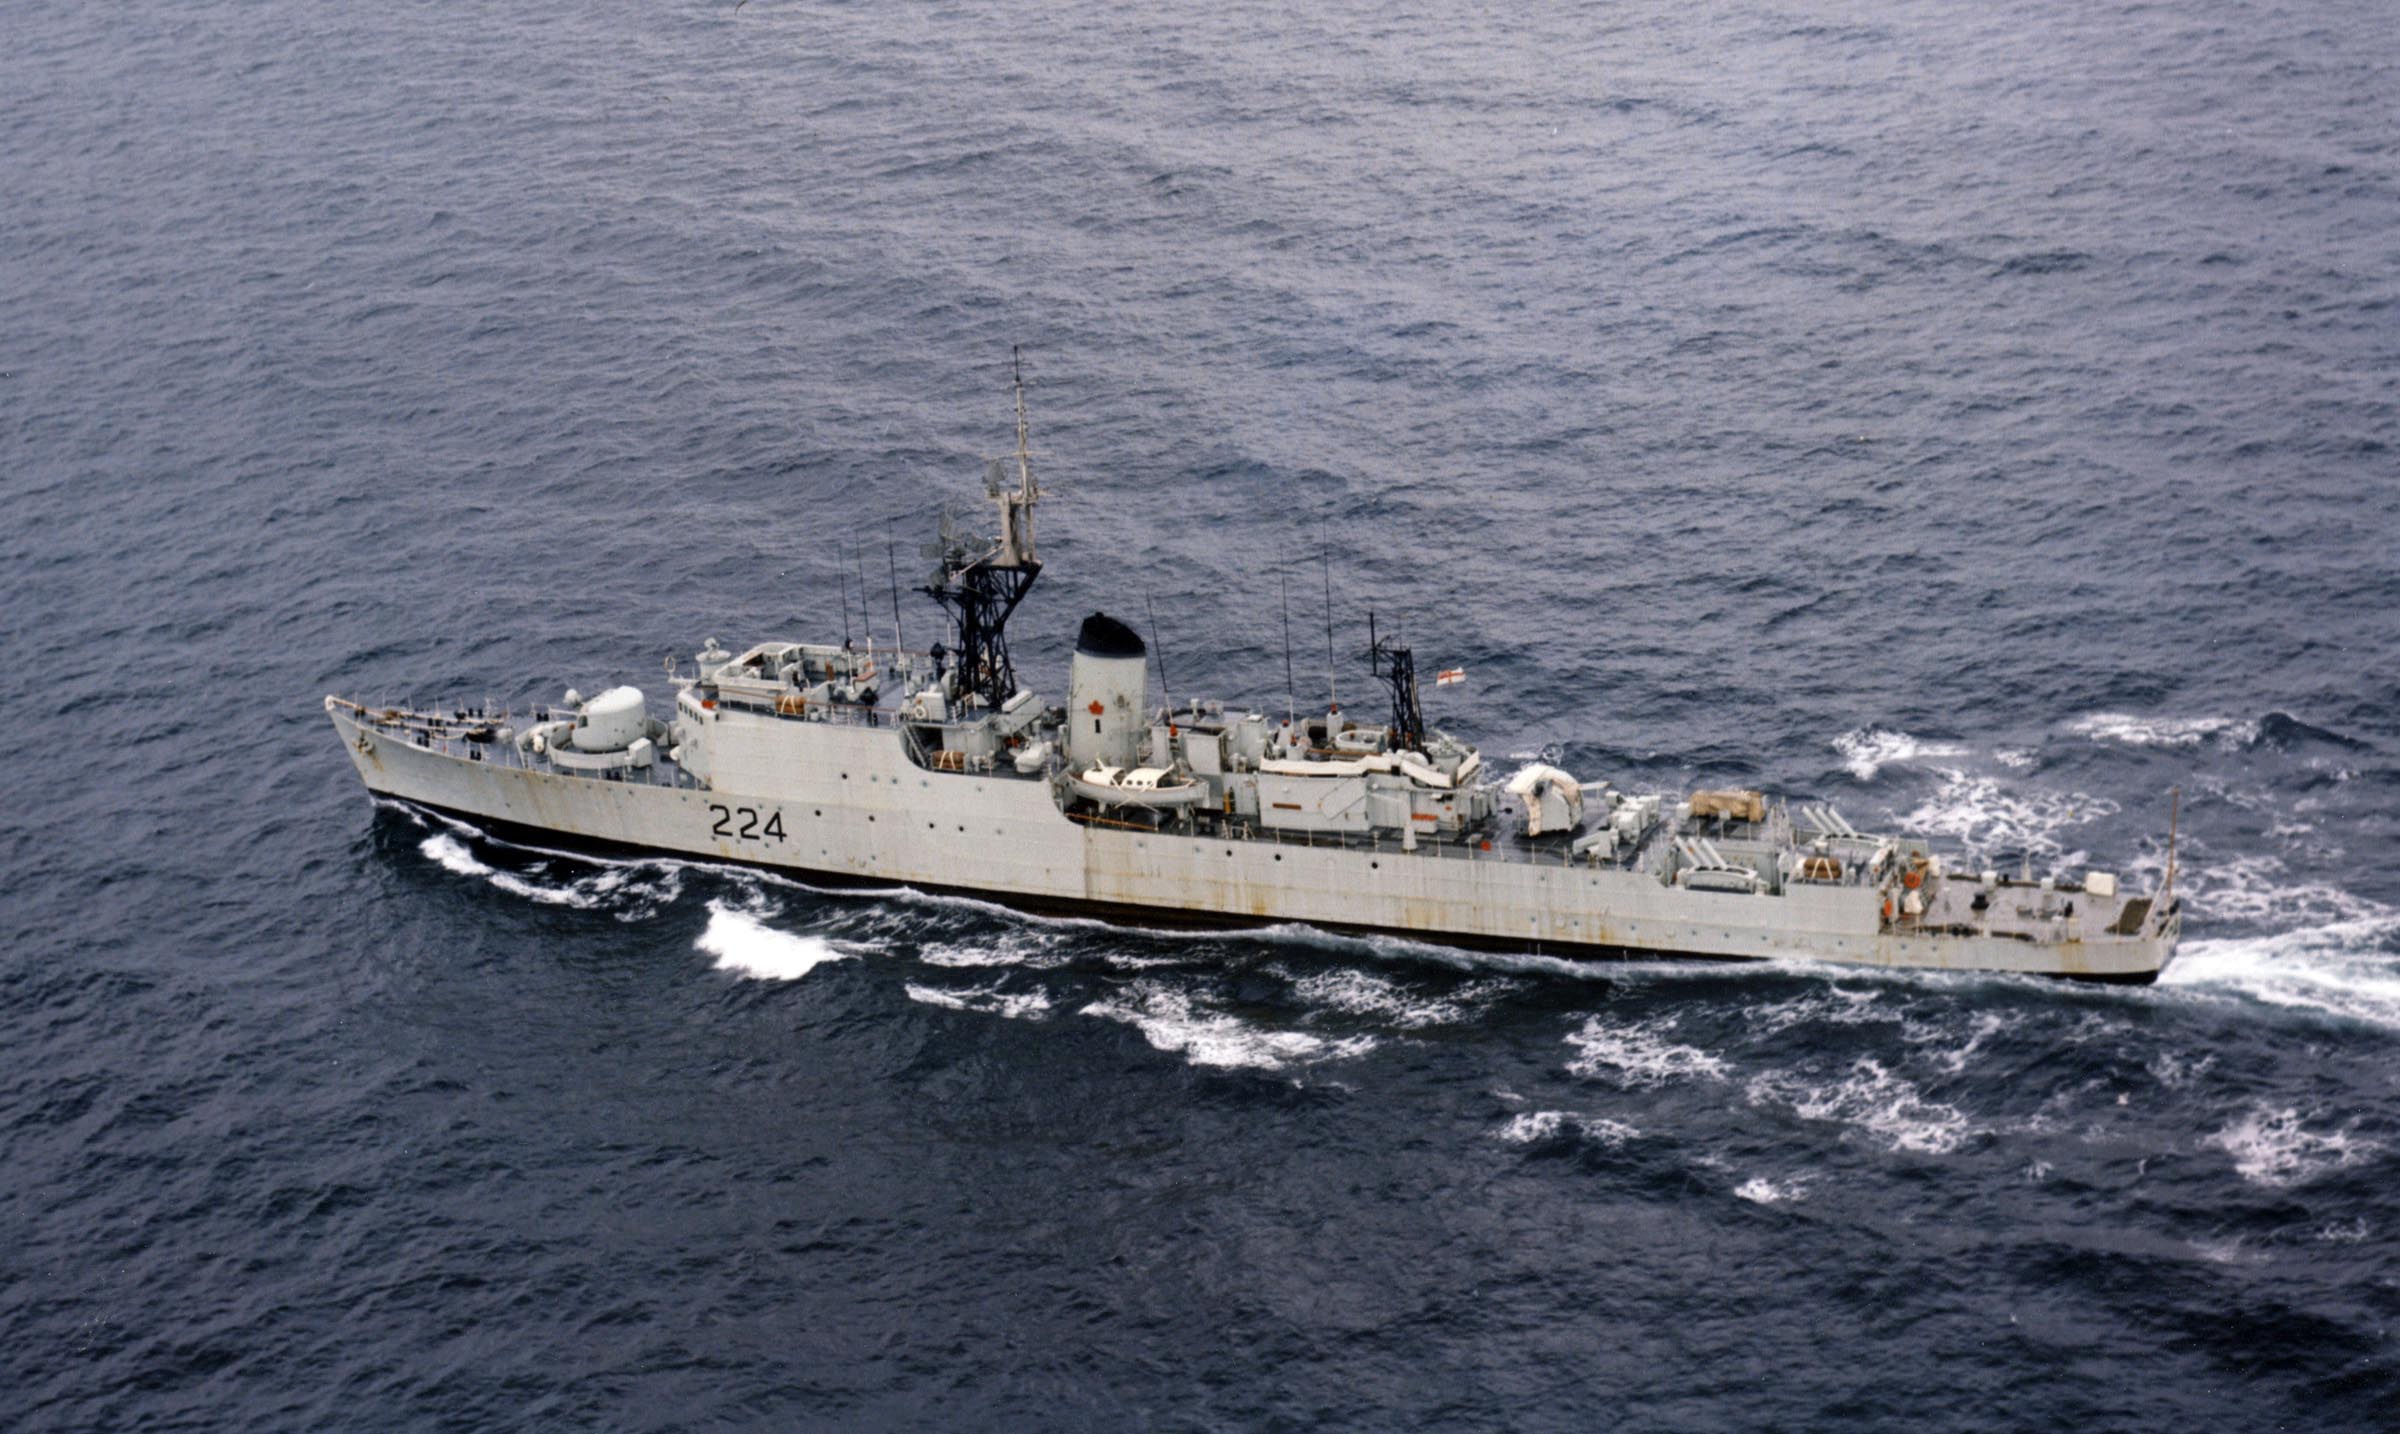 HMCS ALGONQUIN (1st)